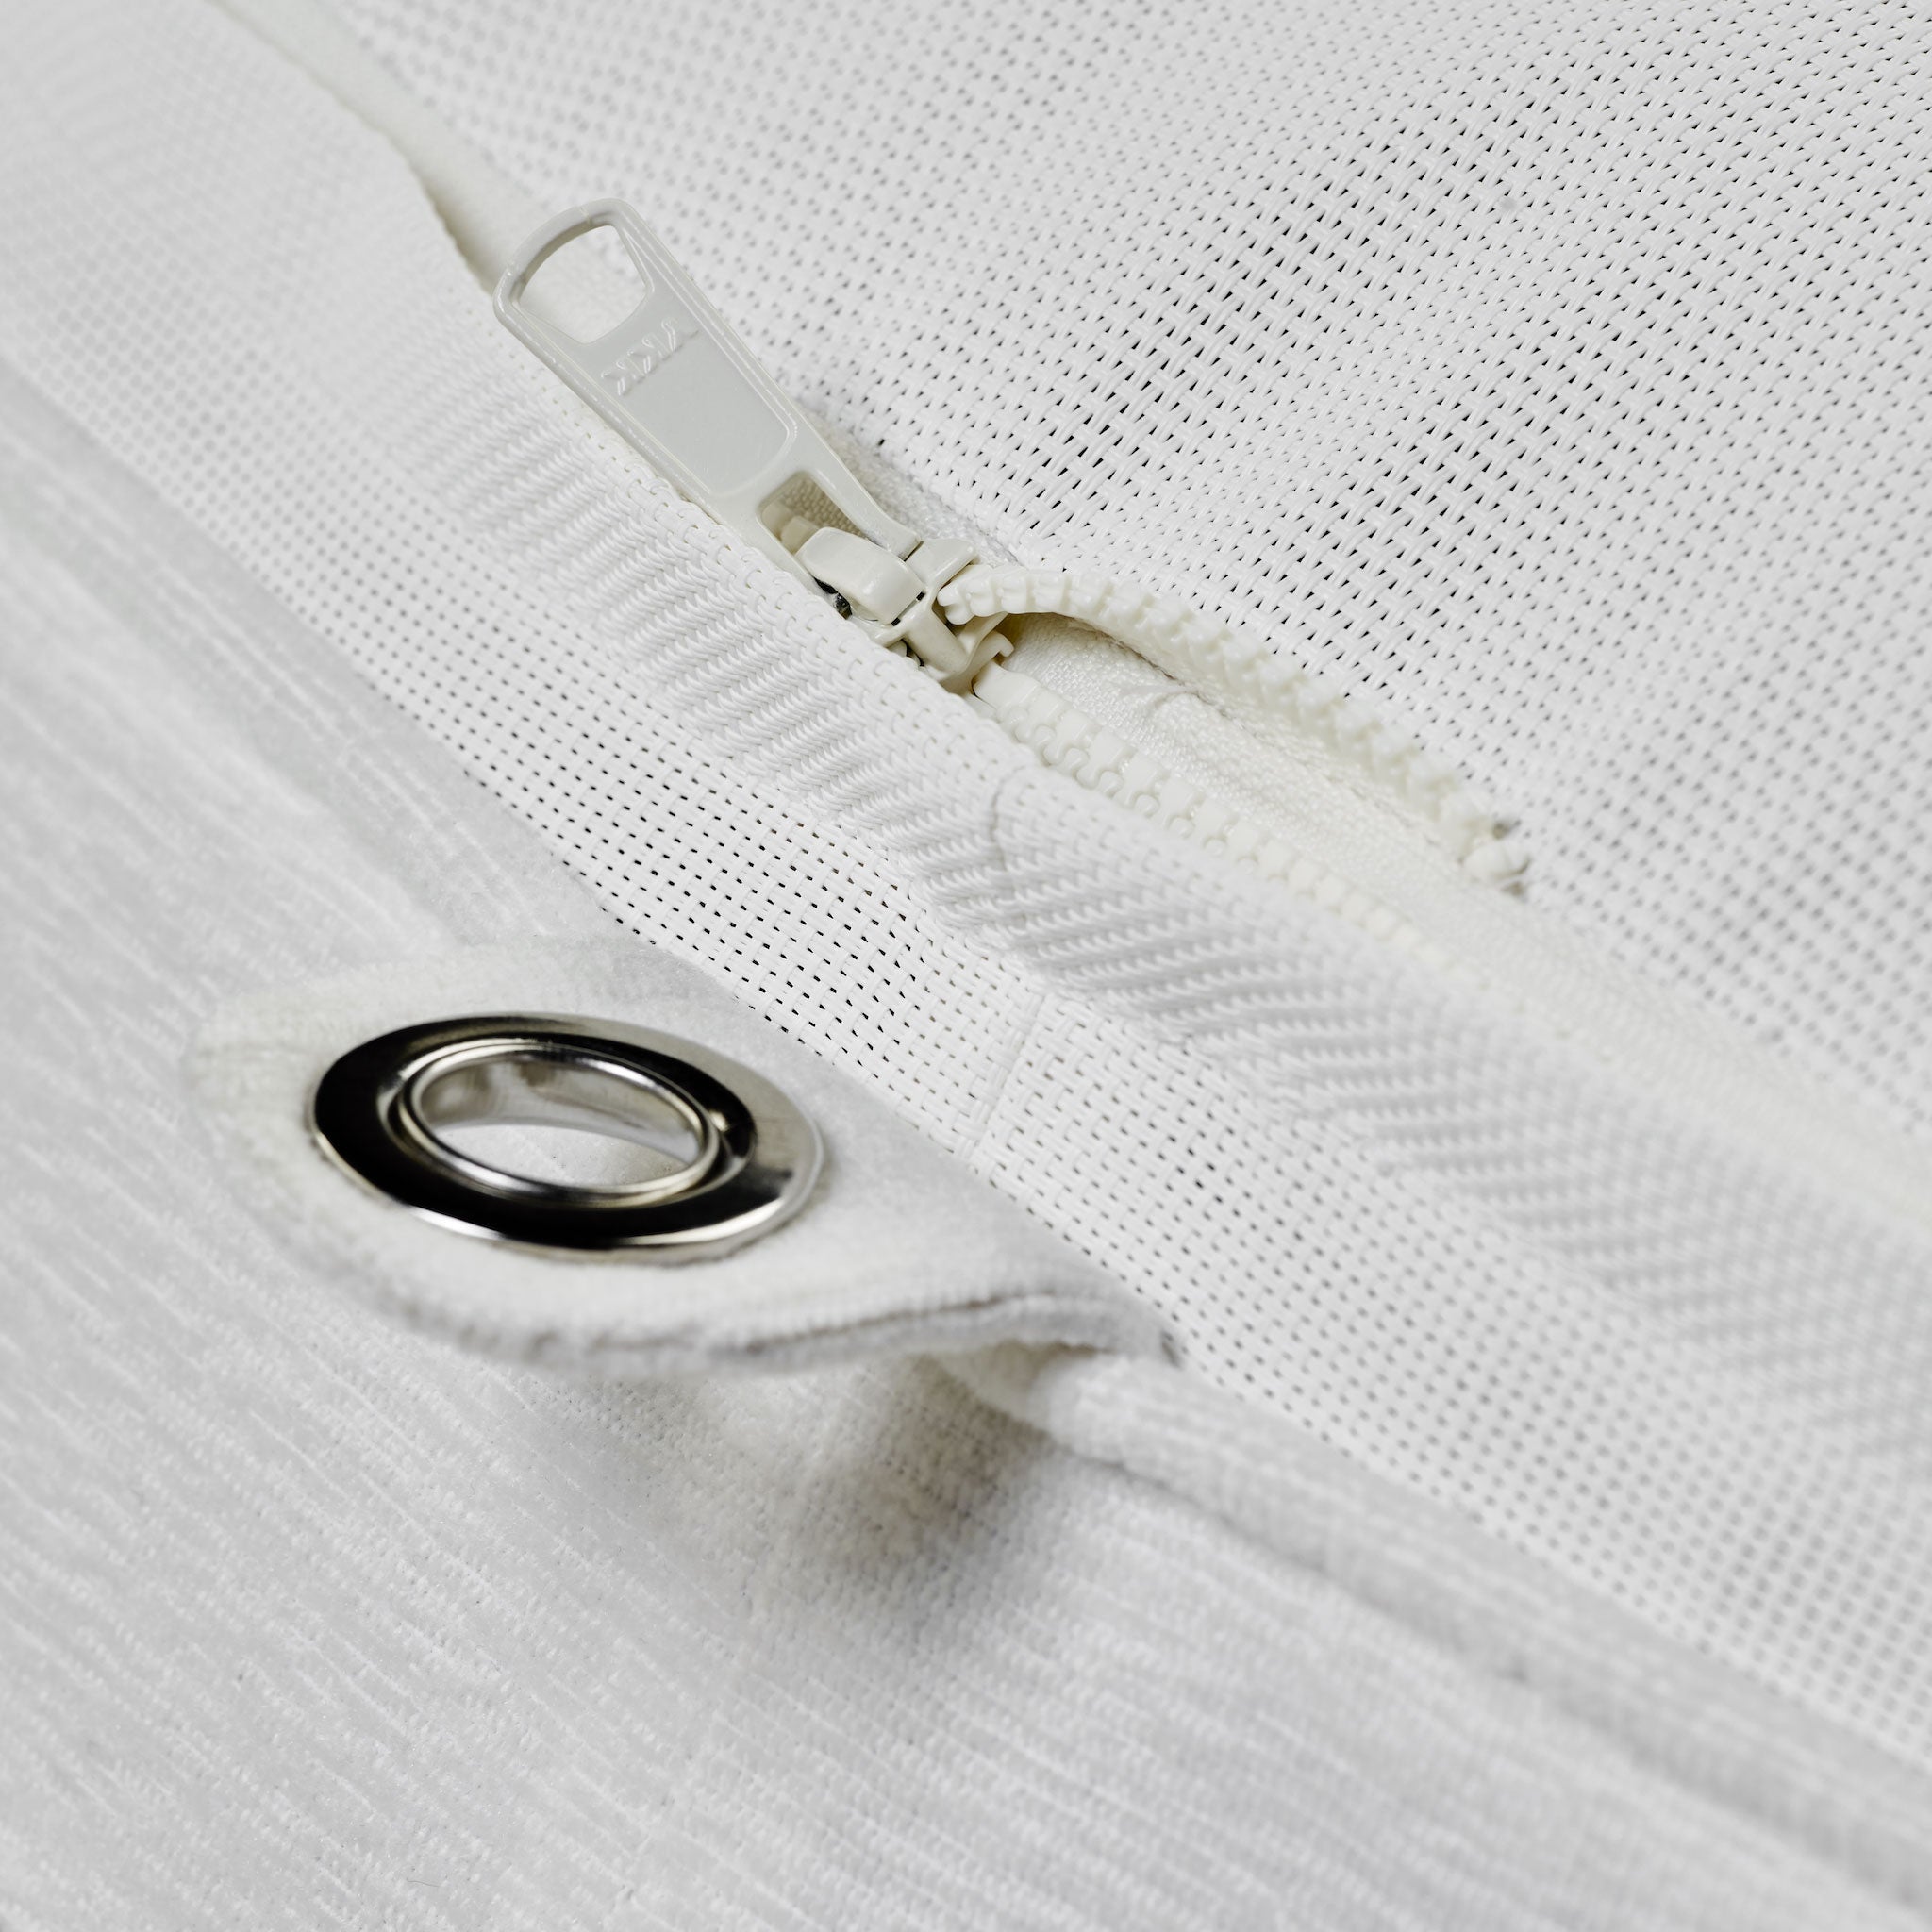 Flotteur de piscine de luxe Bague en tissu éponge blanc à l'envers, avec des œillets en acier inoxydable, une base durable et des fermetures éclair.